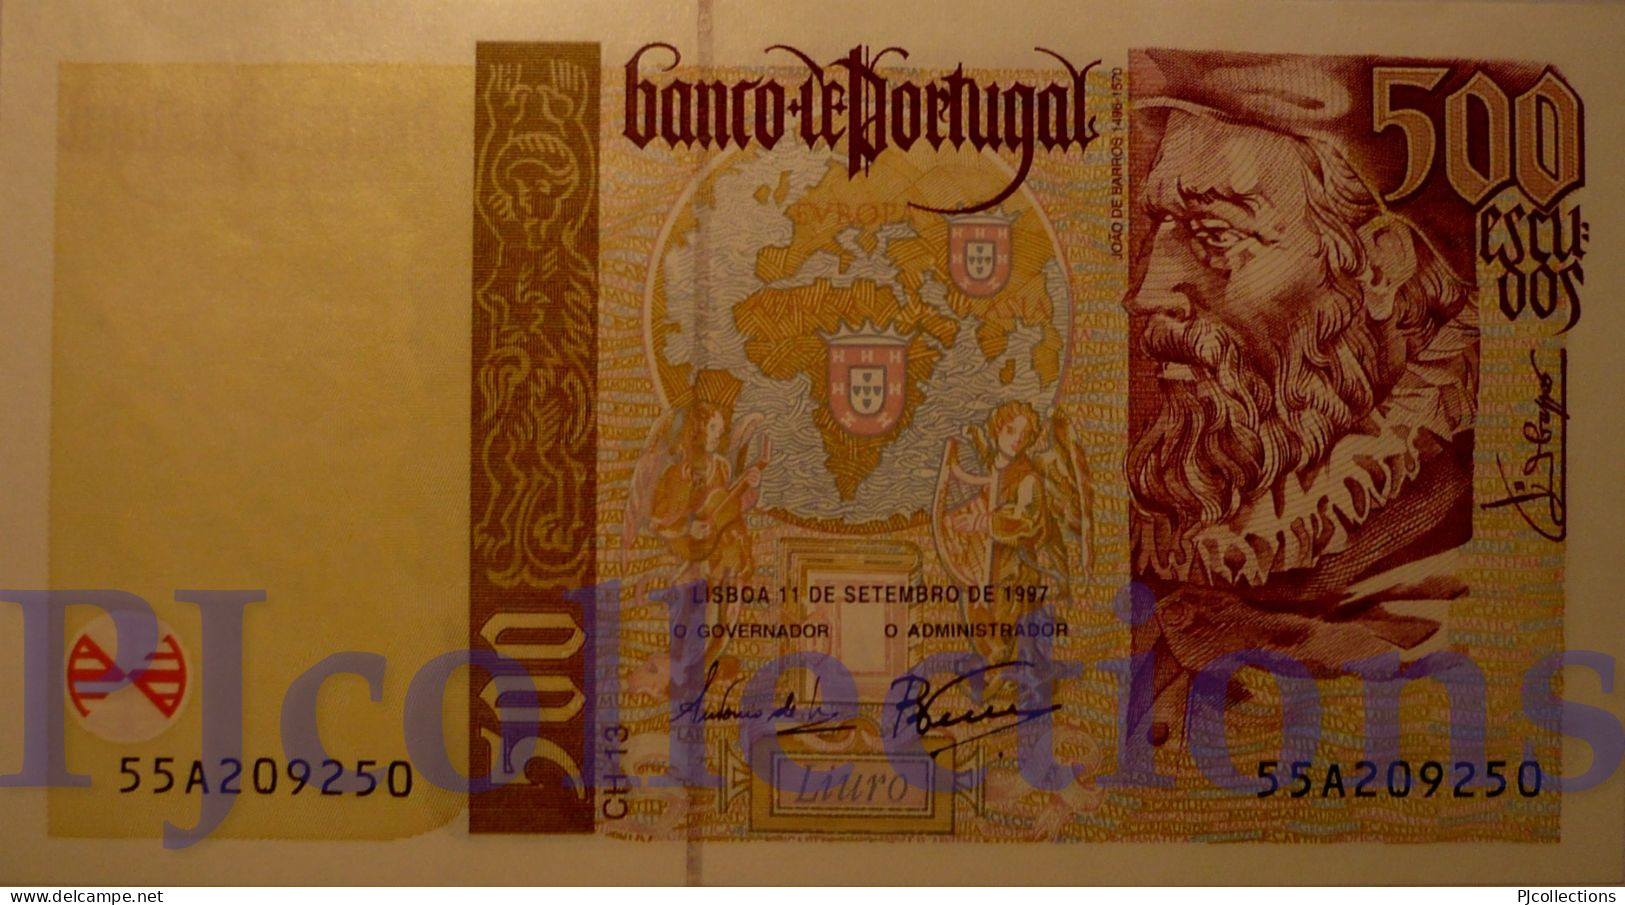 PORTOGALLO - PORTUGAL 500 ESCUDOS 1997 PICK 187b UNC - Portugal